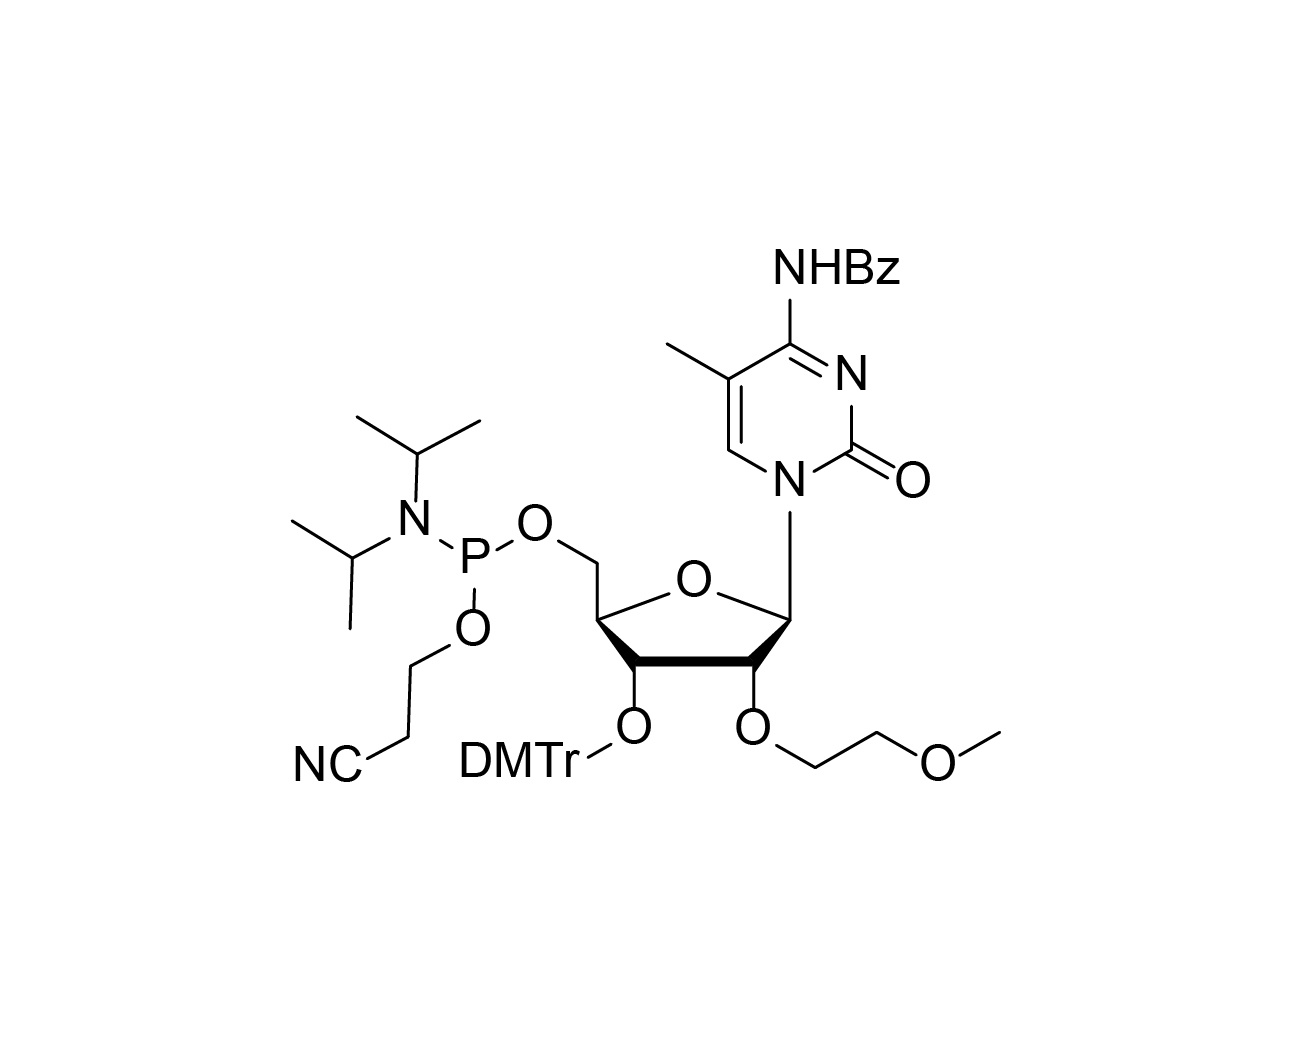 3'-O-DMTr-2'-O-MOE-5-Me-rC(Bz)-5'-CE-Phosphoramidite